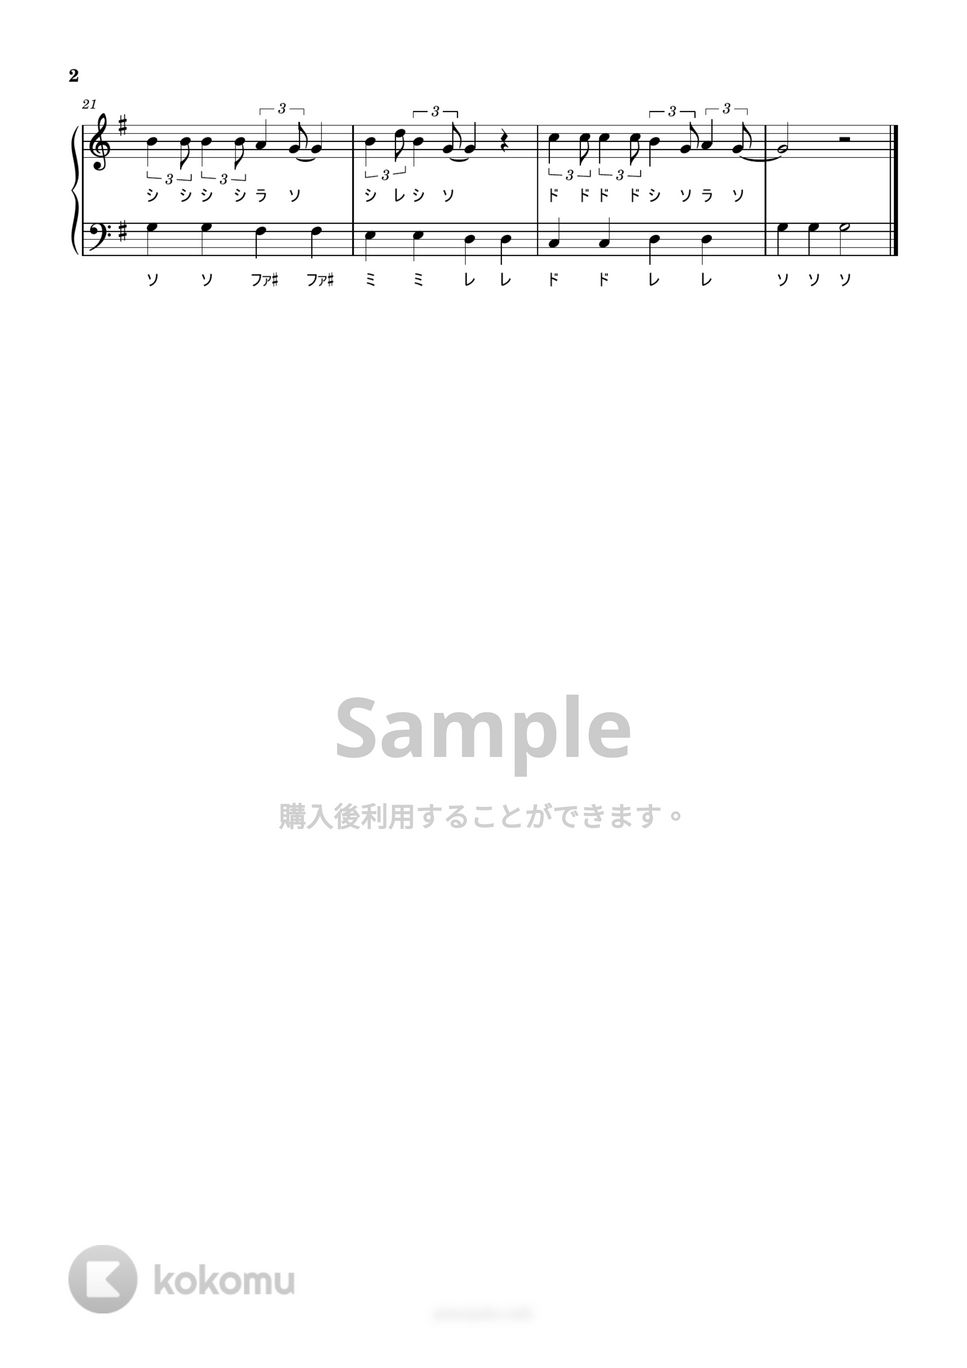 オー・シャンゼリゼ (ドレミ付き/簡単楽譜) by ピアノ塾